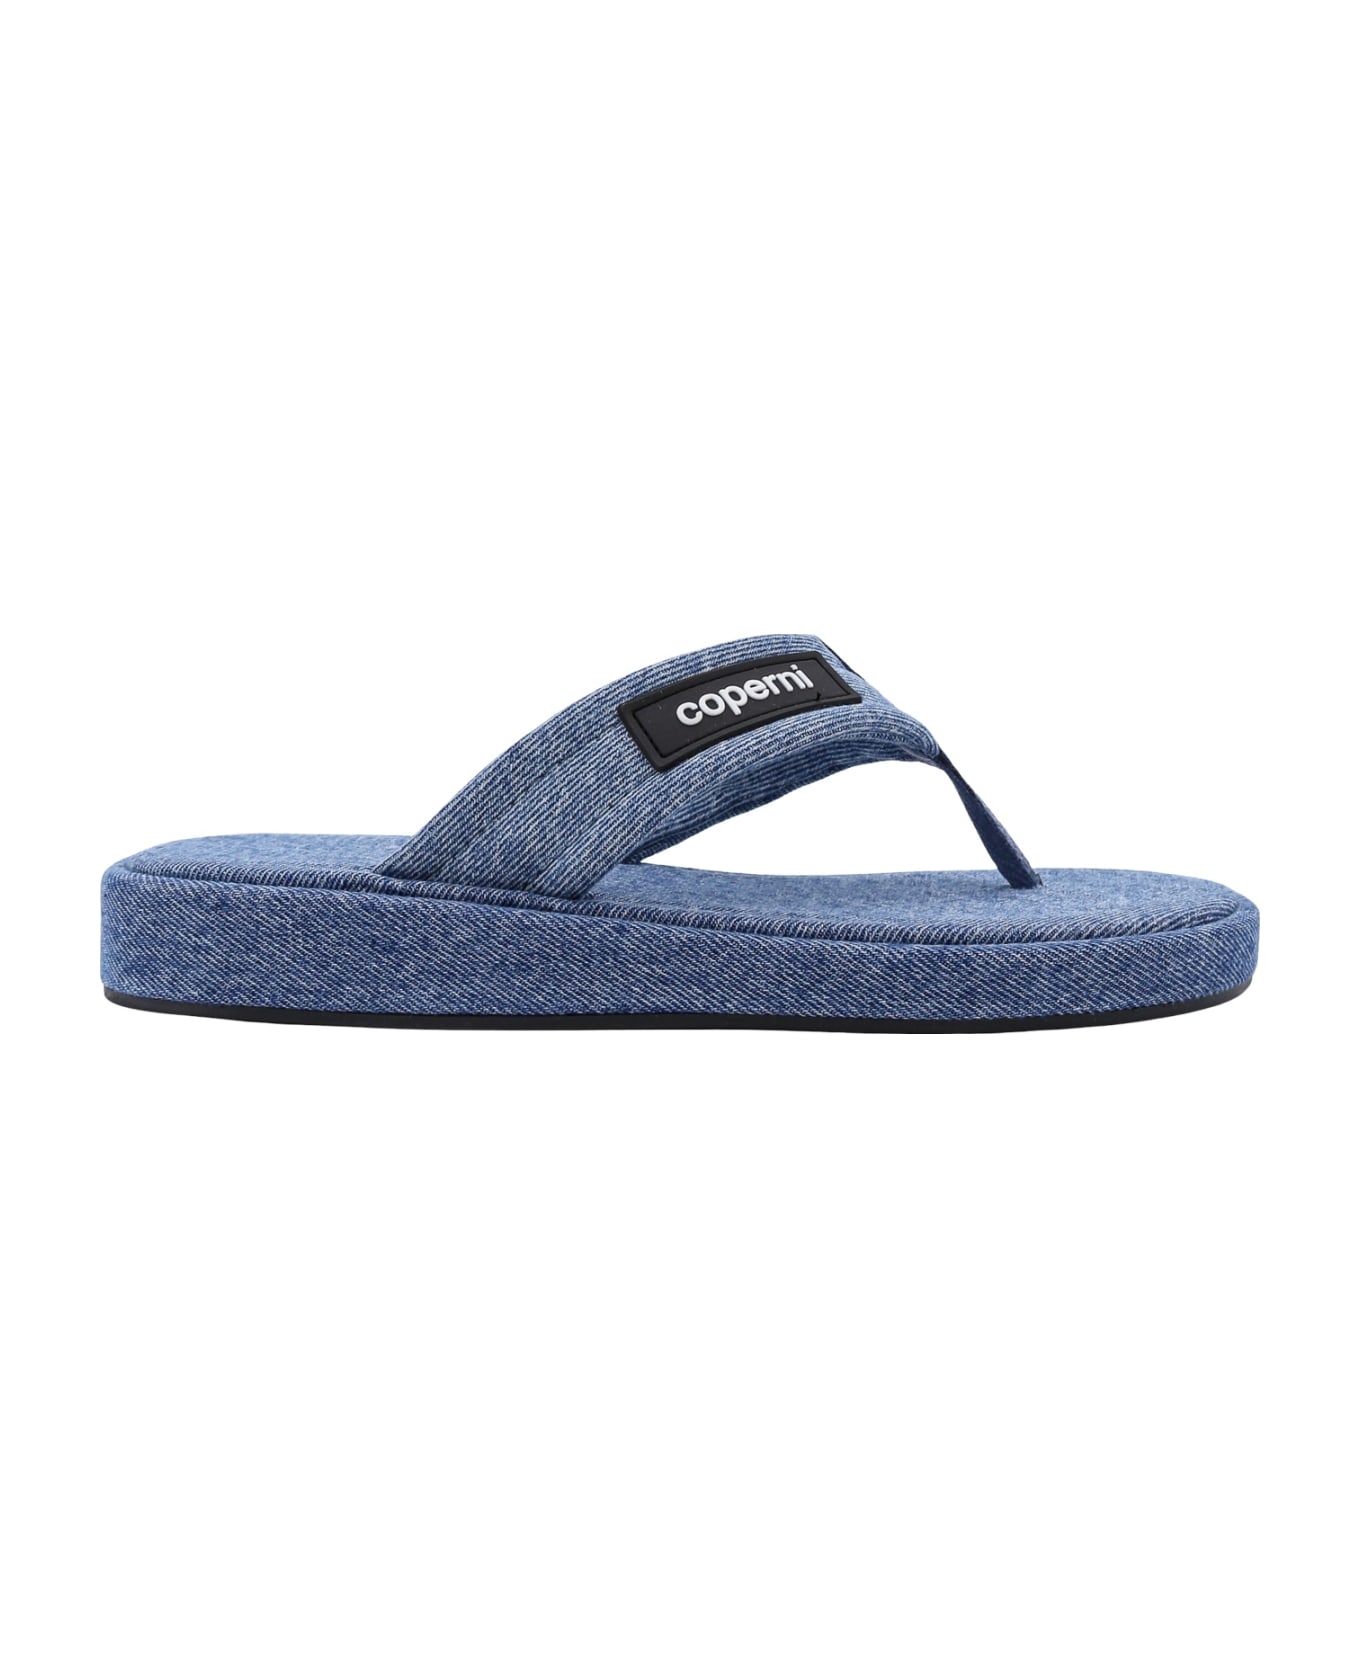 Coperni Sandals - Blue サンダル